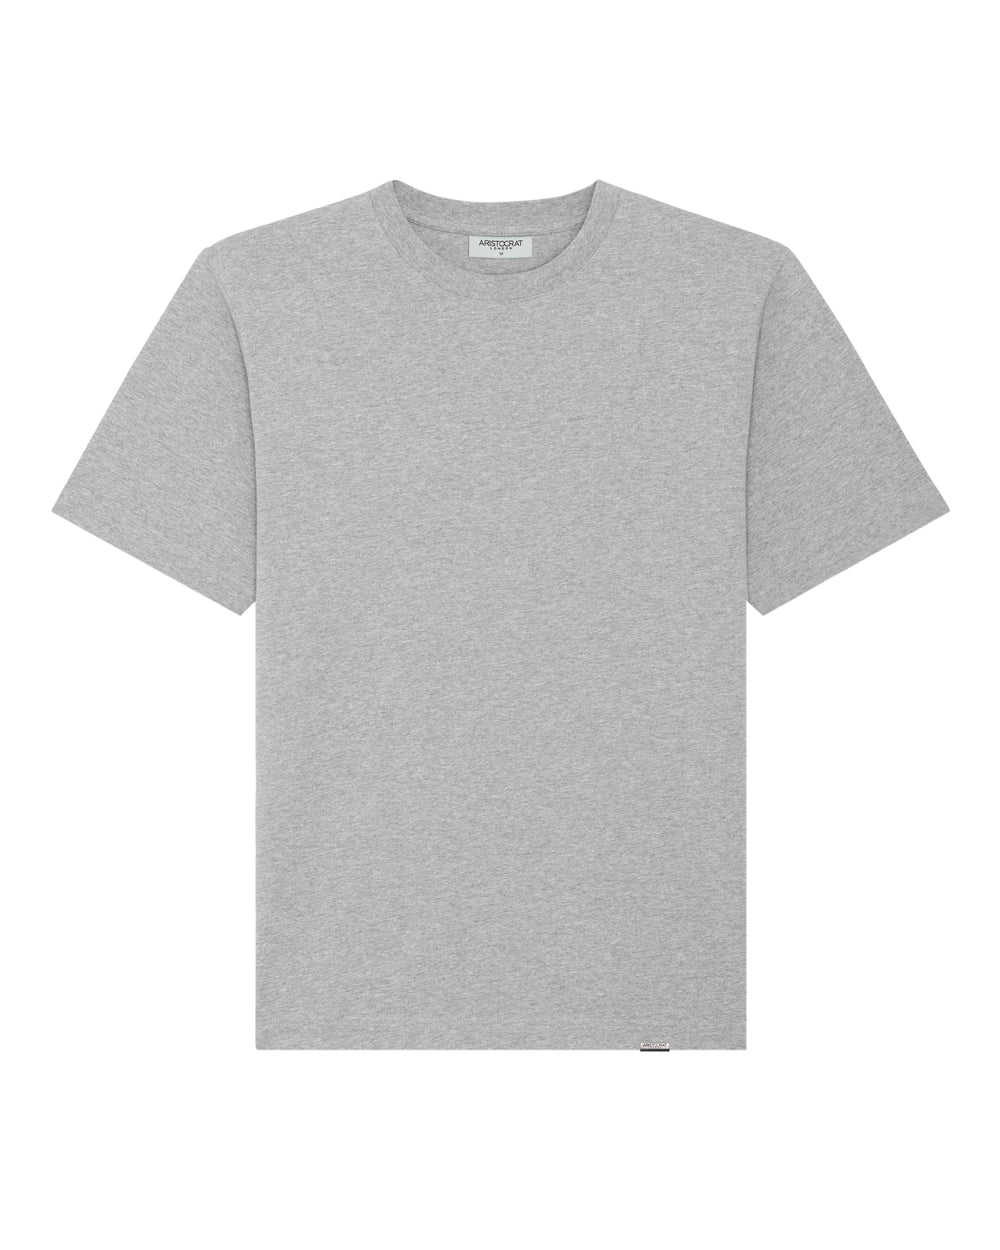 Essential T-Shirt - Ash Grey